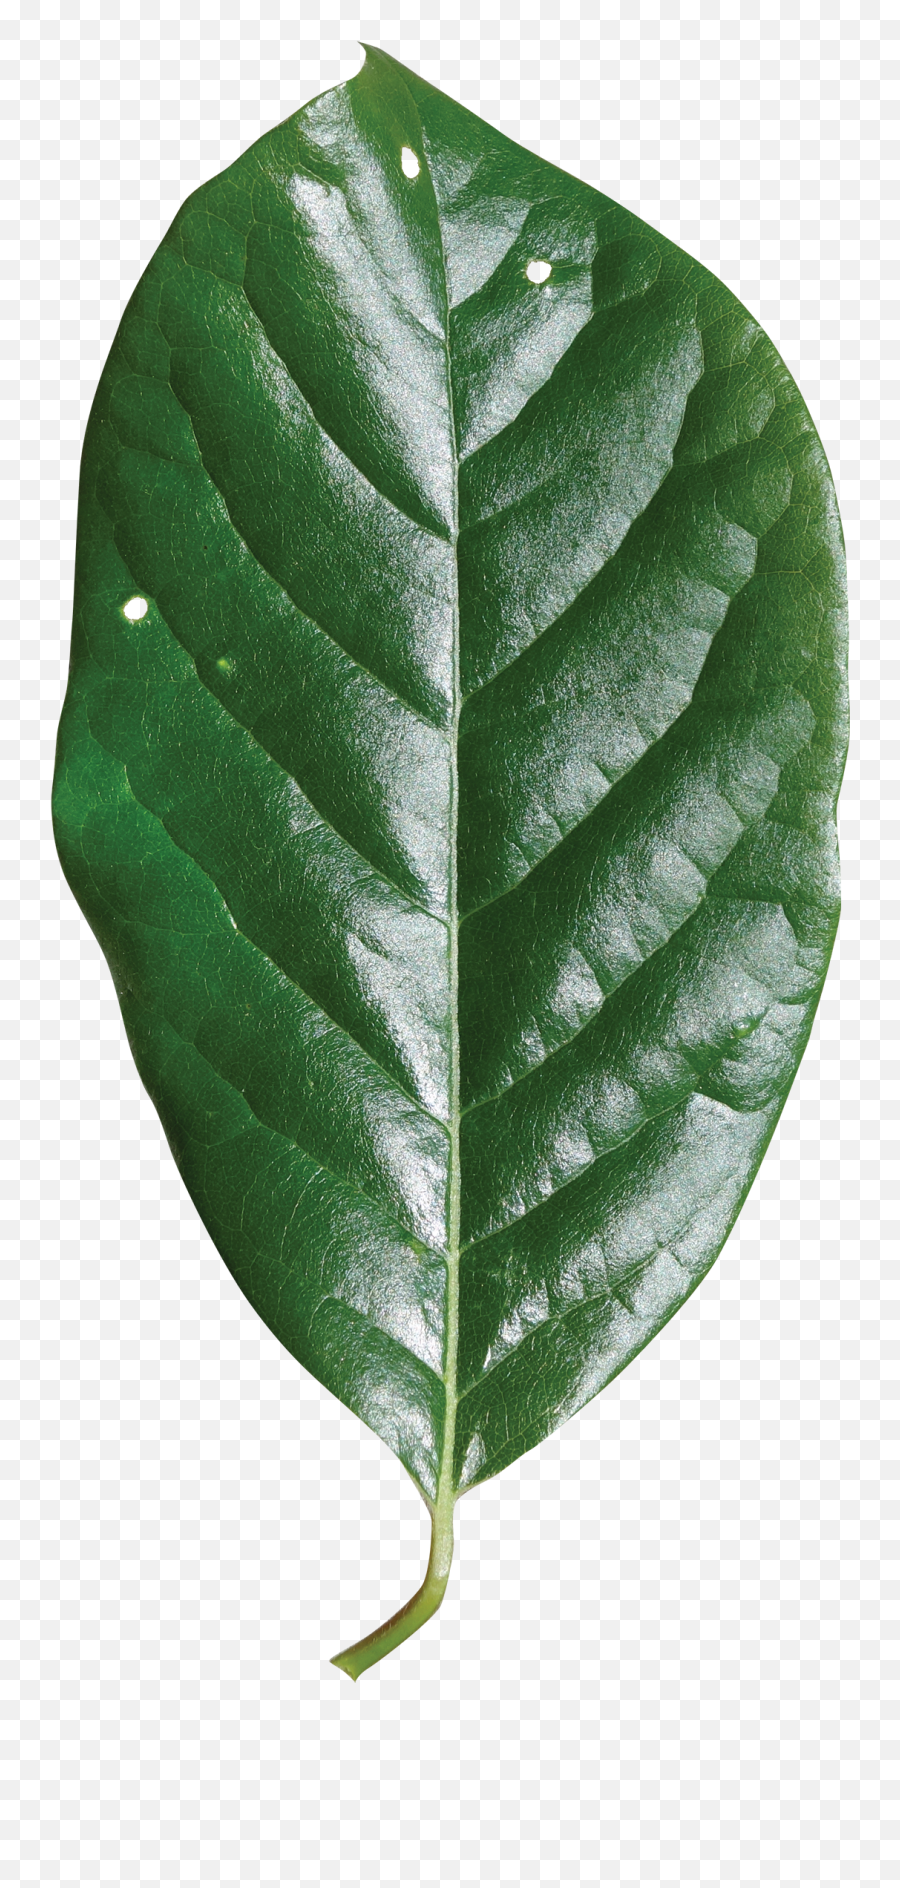 Download Hd Single Green Leaf Png - White Walnut Transparent Black Gum Tree Leaves,Green Leaf Png